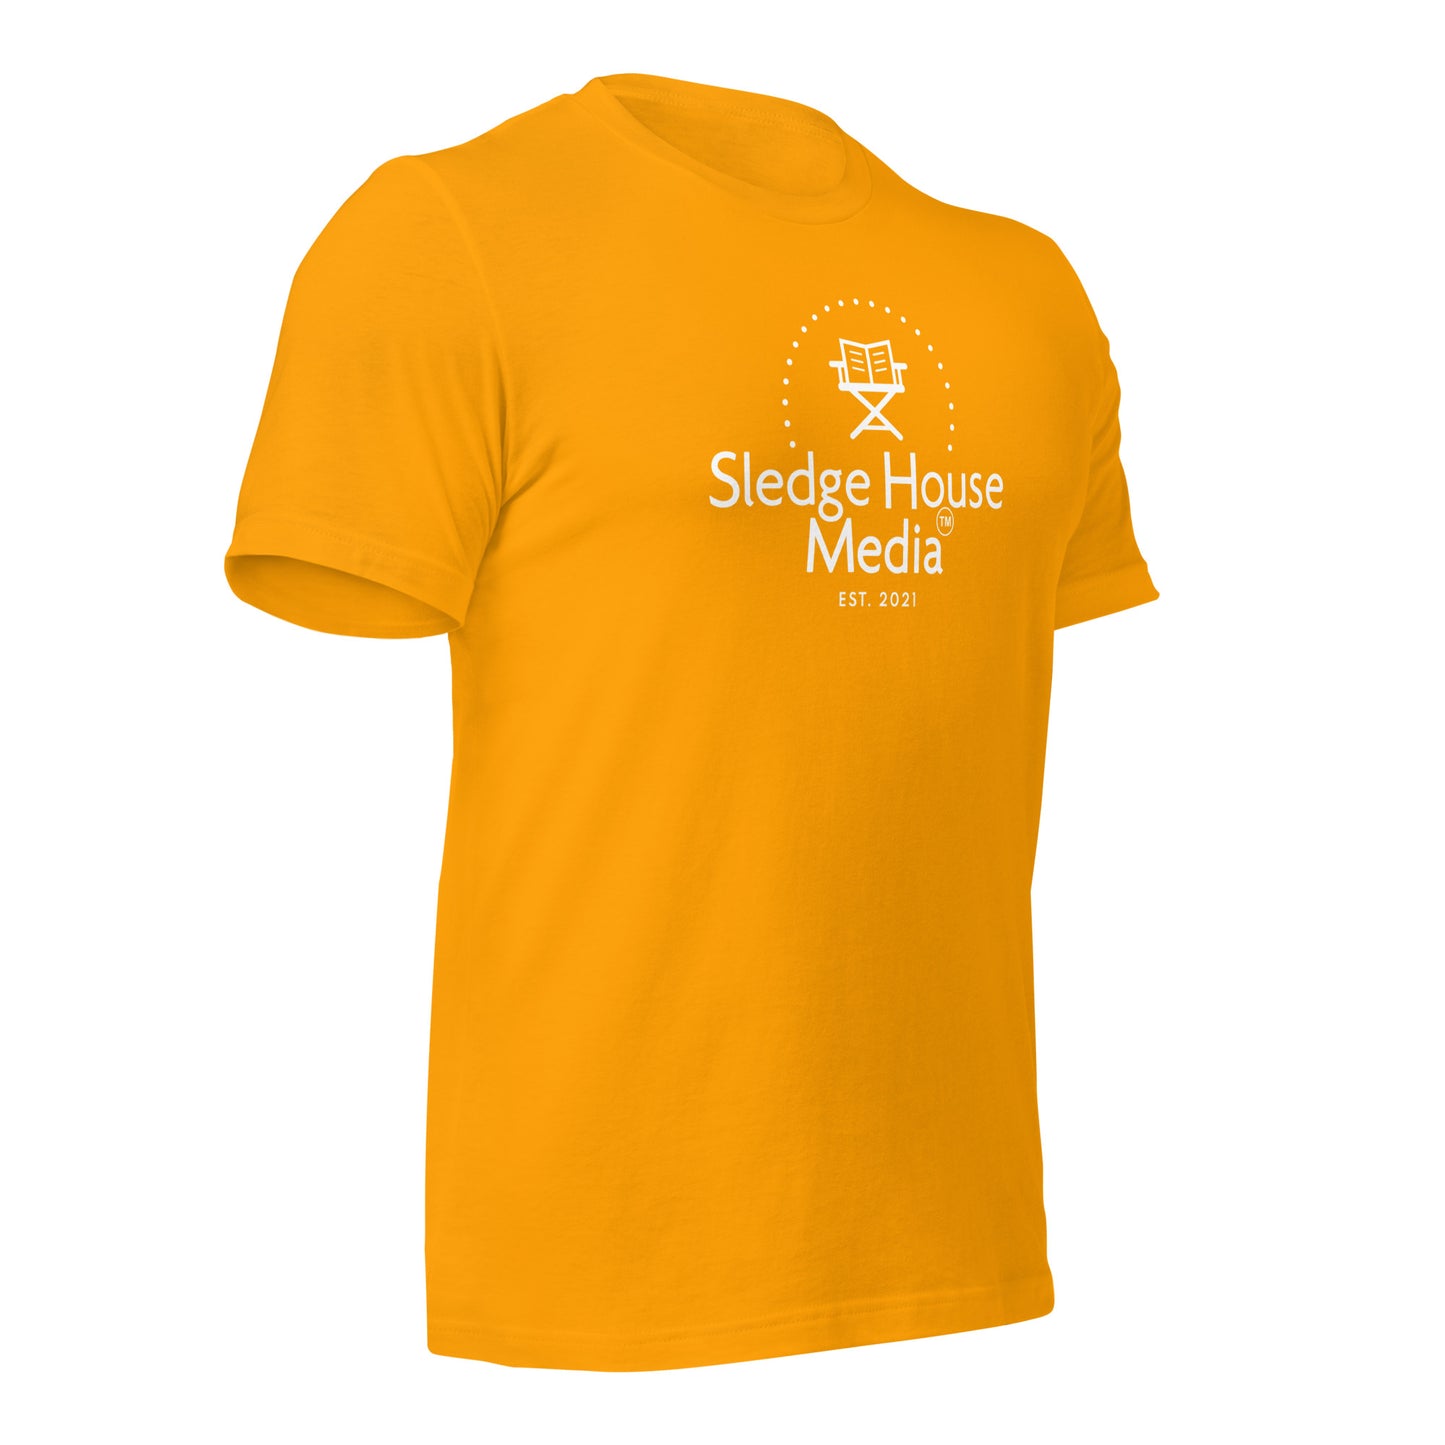 "The OG" Sledge House Media Unisex T-Shirt